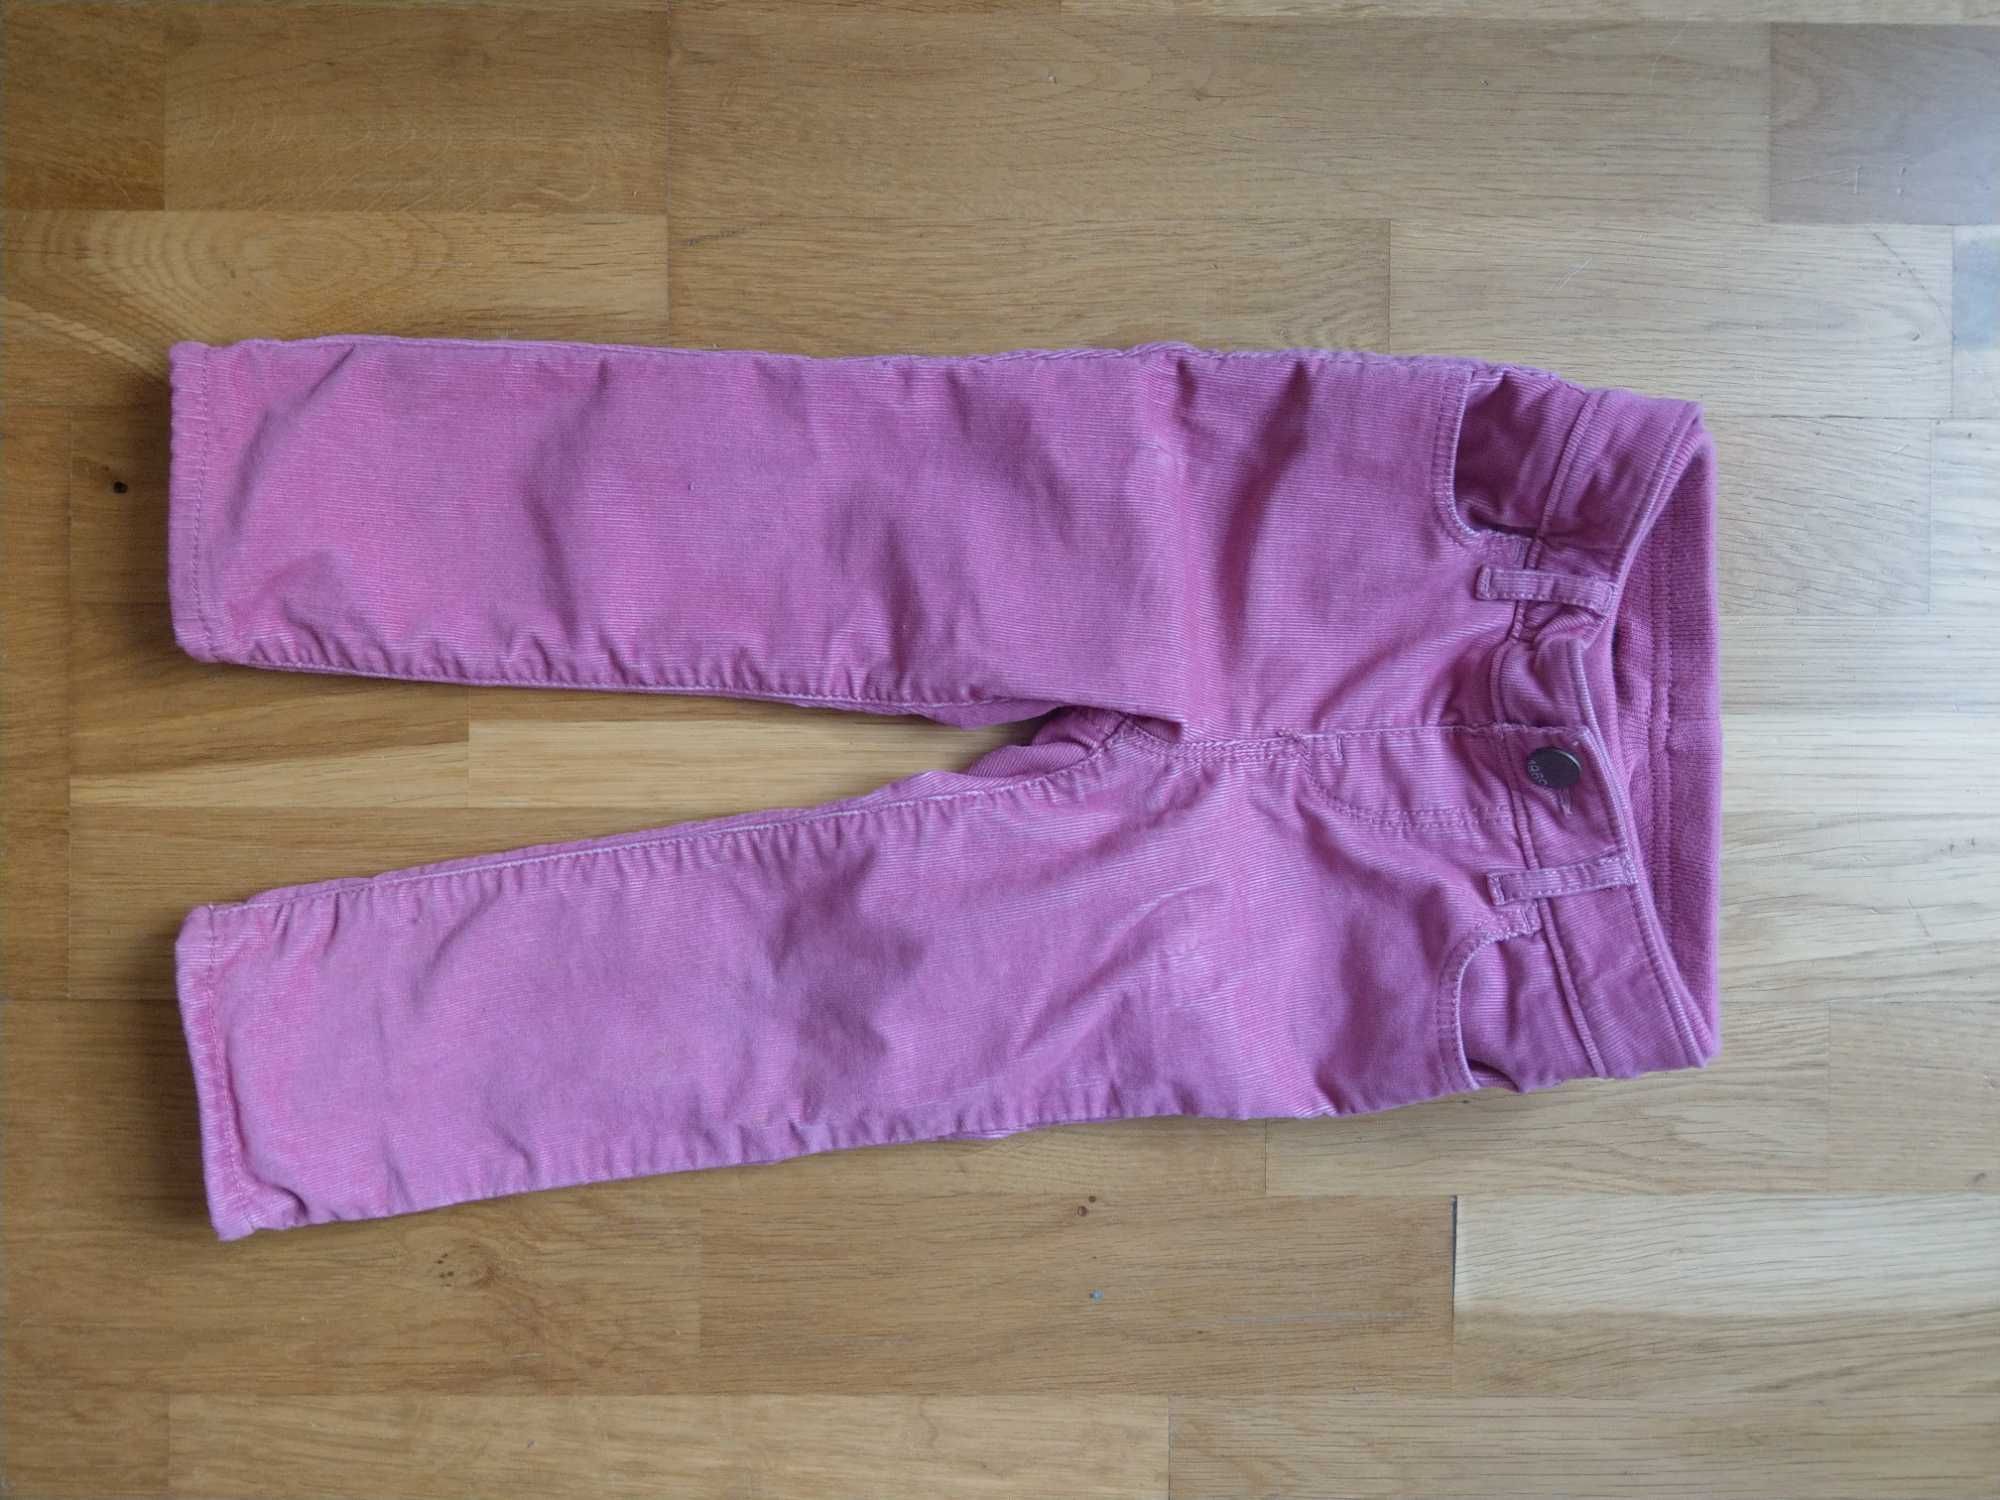 Gap Cieple Sliczne 92-95cm 2 lata wygodne podszewka bawelna spodnie